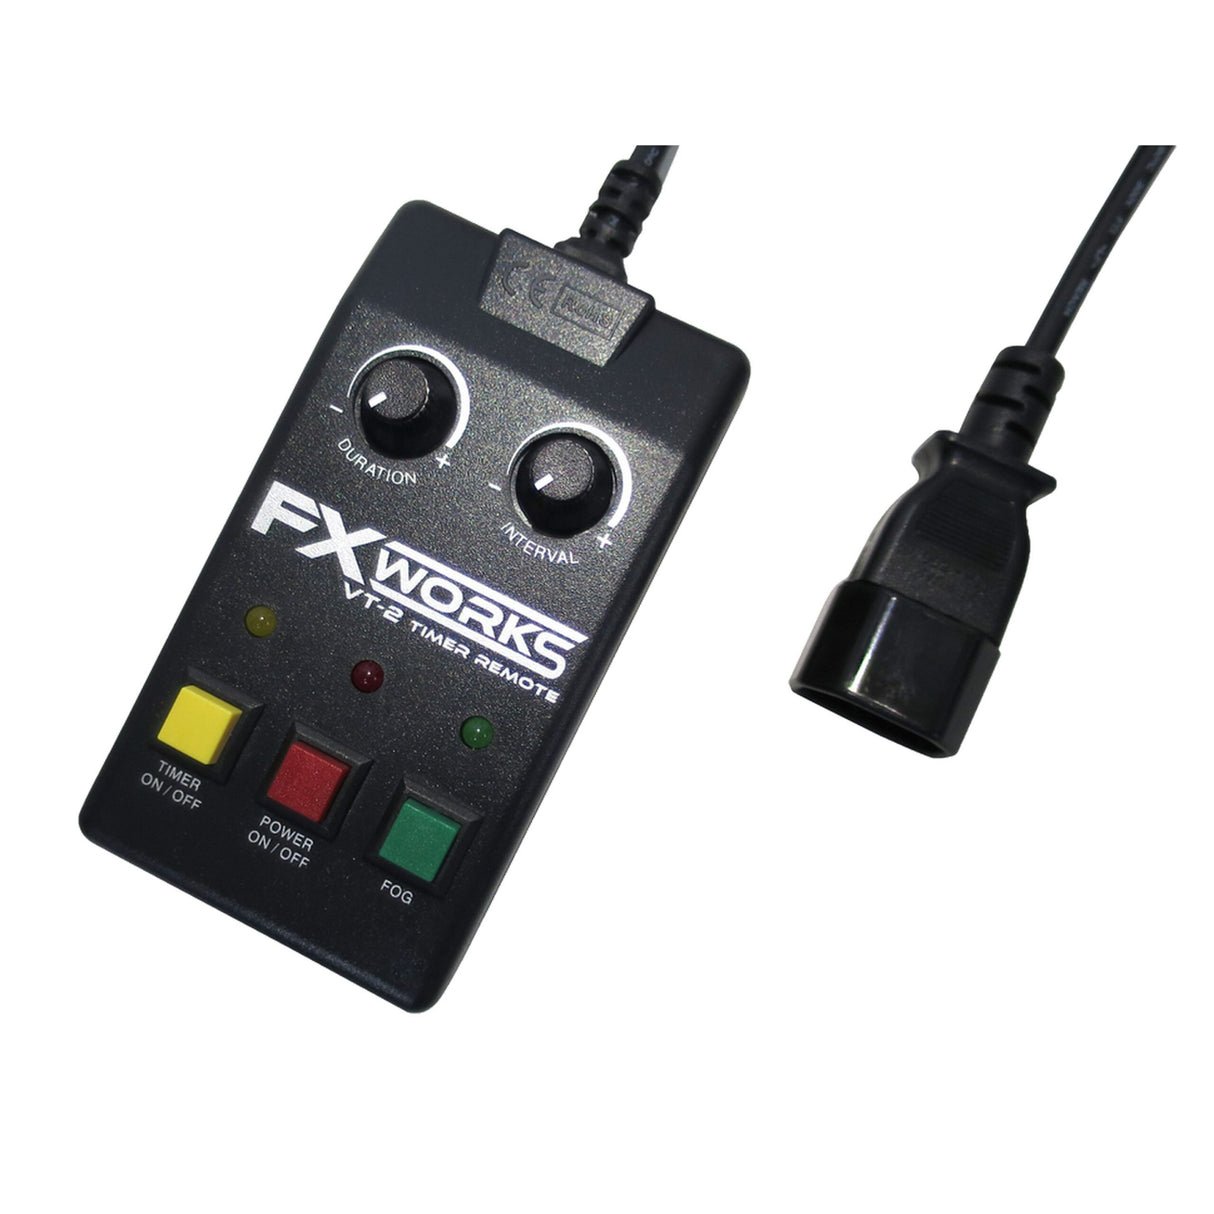 Antari VT-2 FX Works Timer Remote for FXW-800